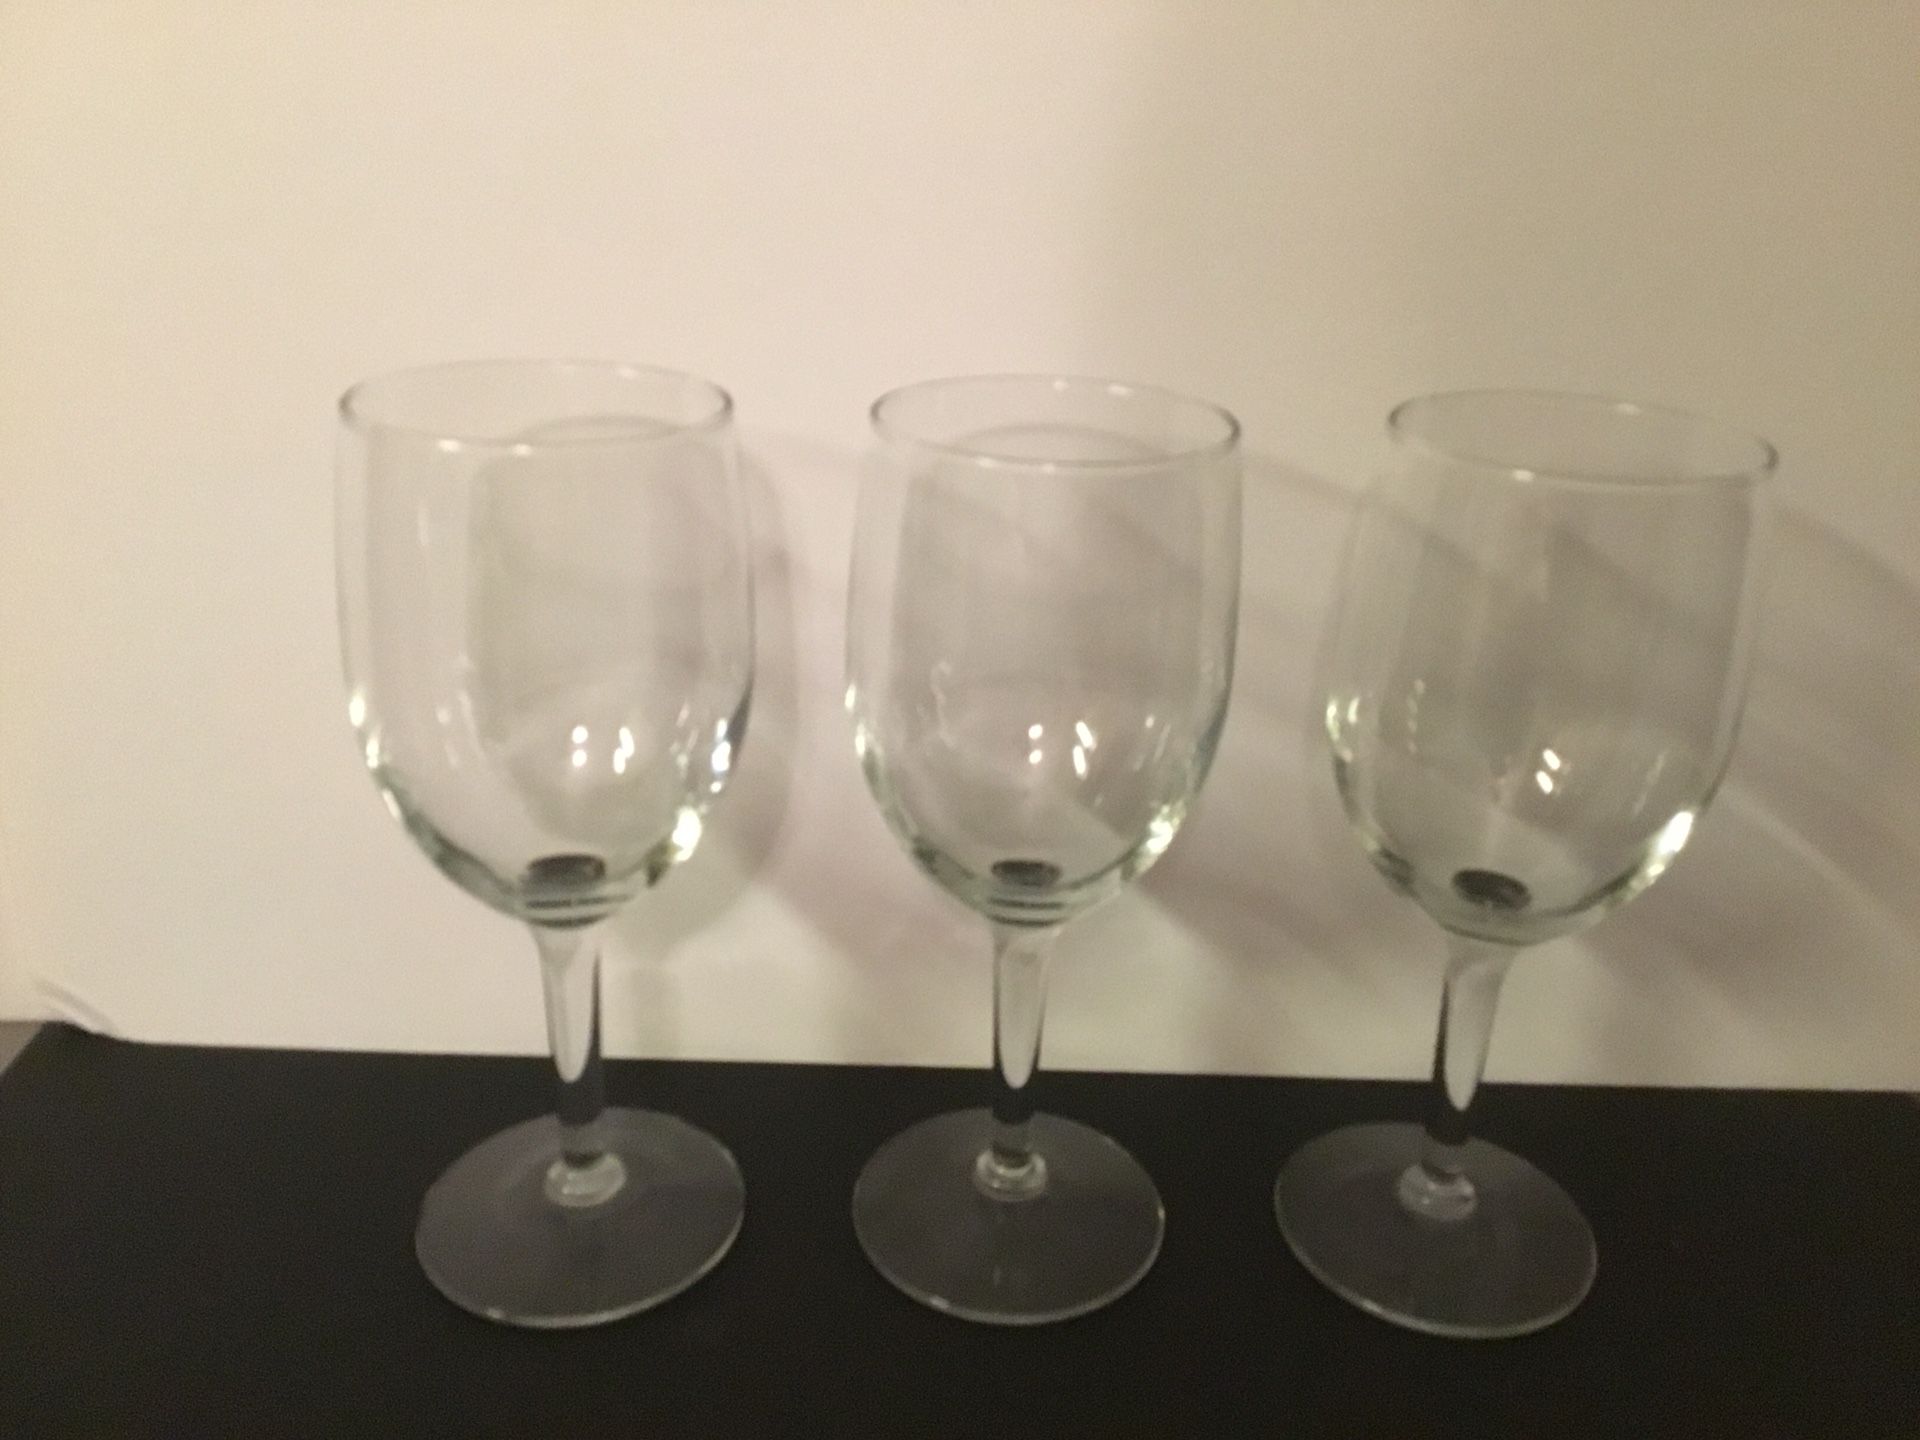 Three matching wine glasses